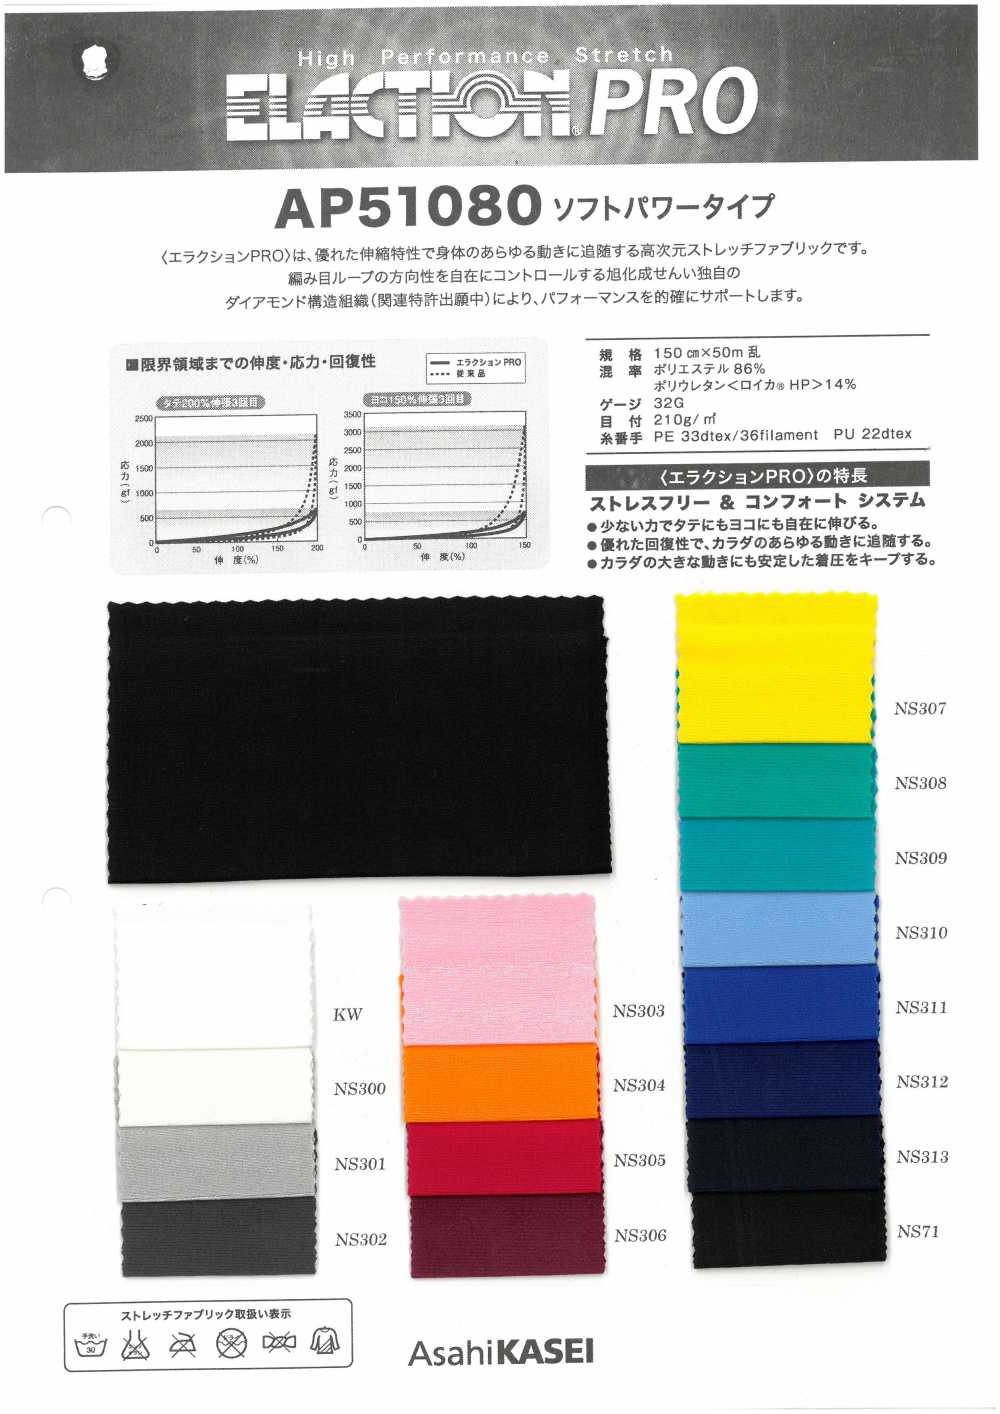 AP51080 Tipo Di Potenza Morbida Eraction Pro[Tessile / Tessuto] Tratto Del Giappone